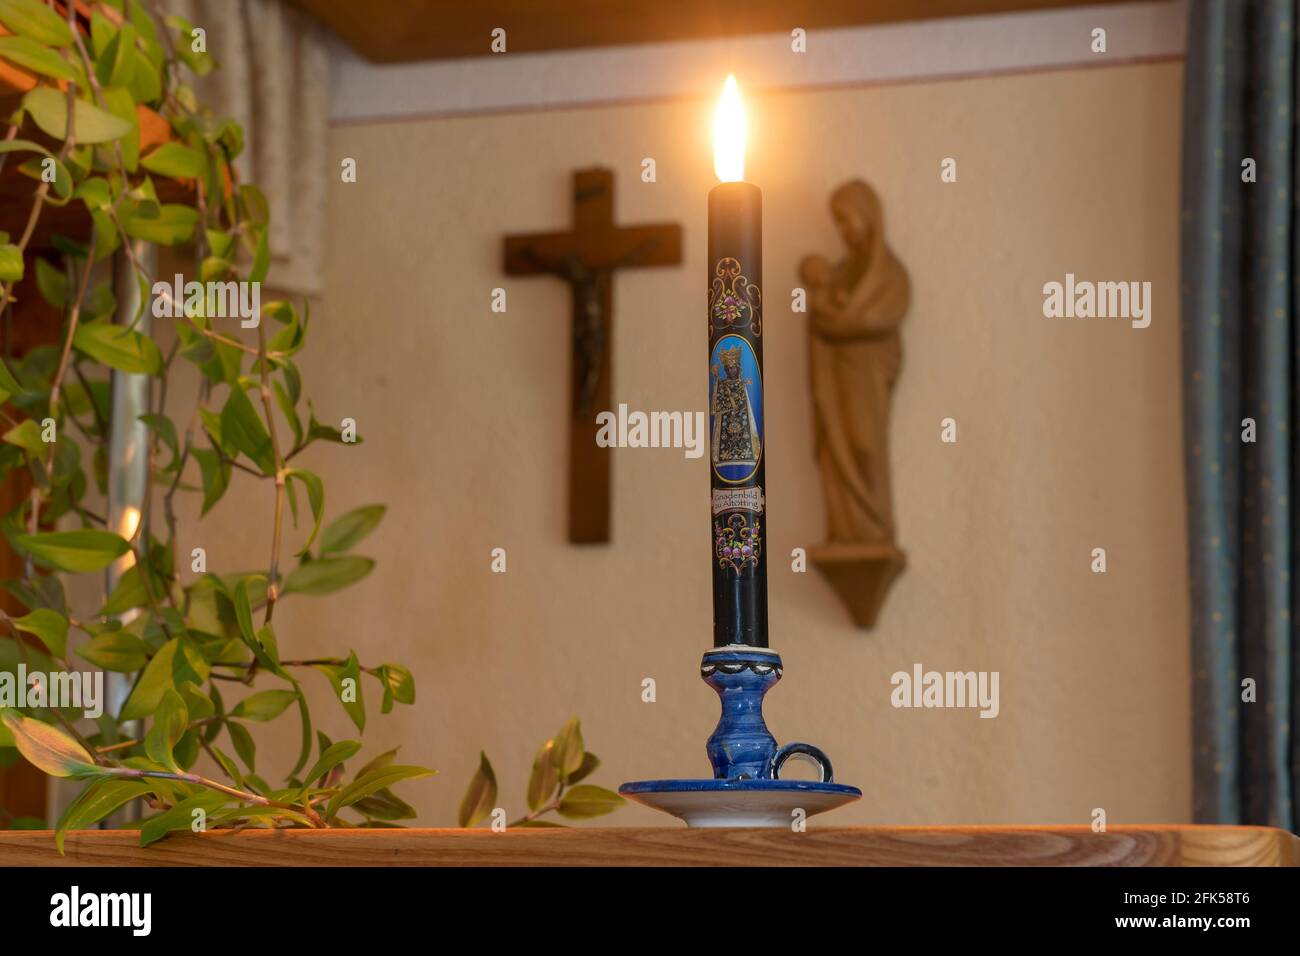 Wetterkerze vor dem Herrgottswinkel- christlicher Glaube die brennende Kerze soll Unheil bei einem Gewitter abwehren Stock Photo